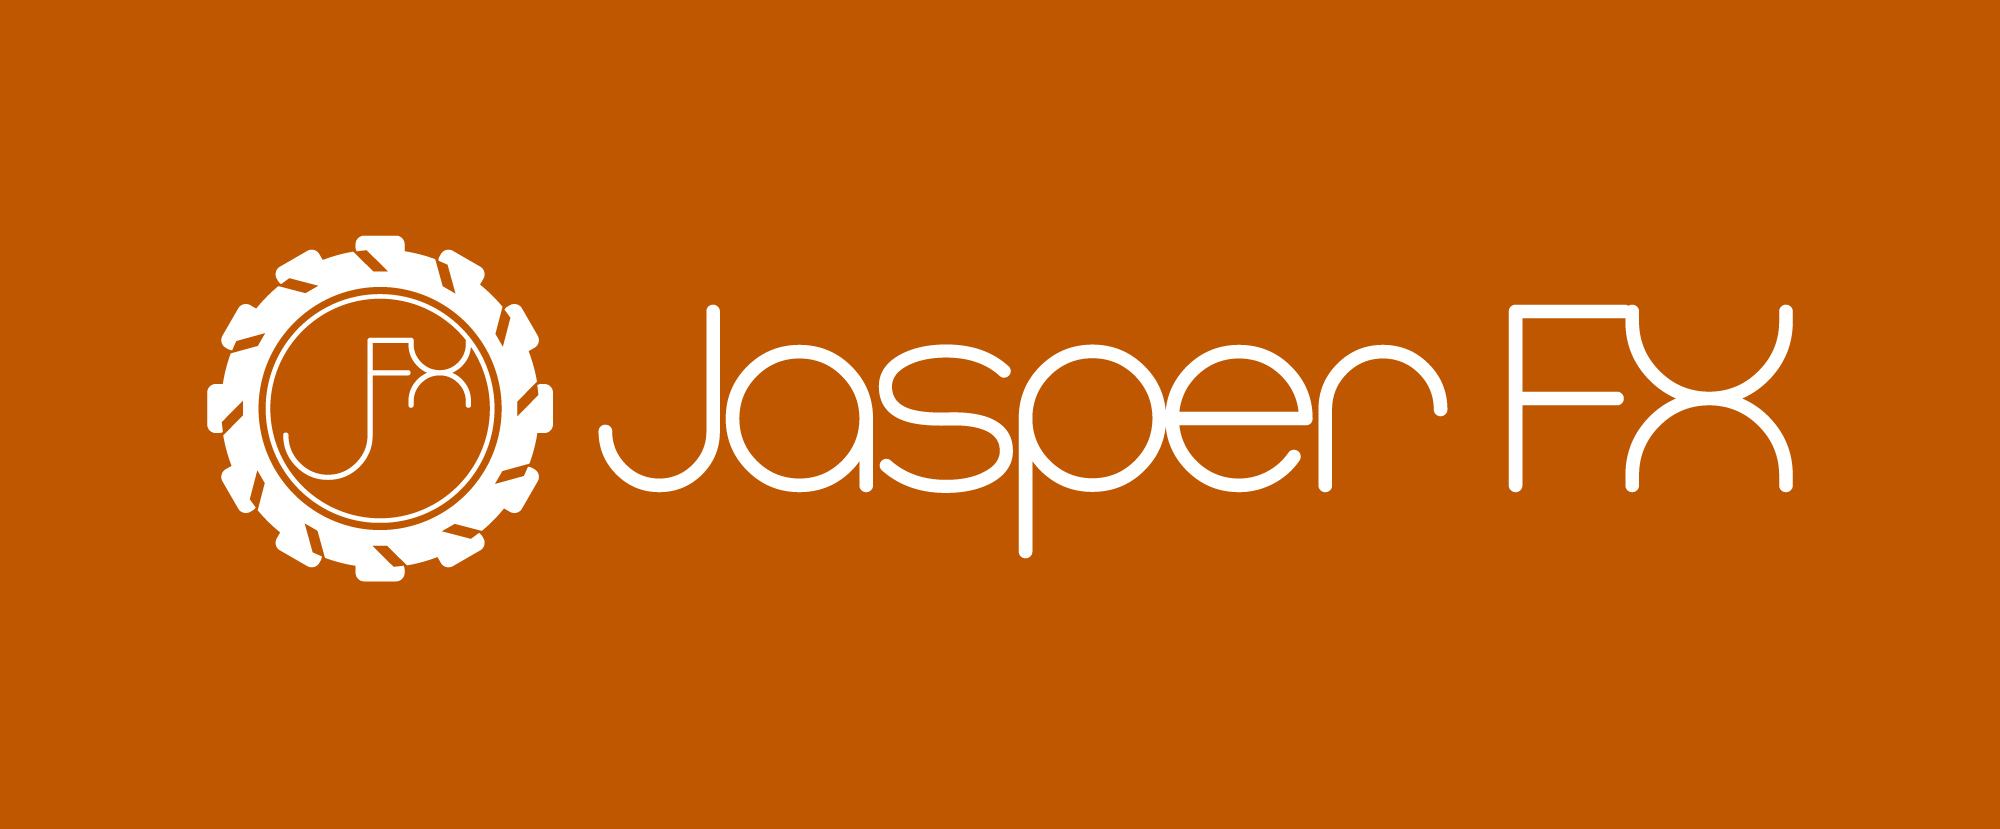 jasperfx logo final orange bg